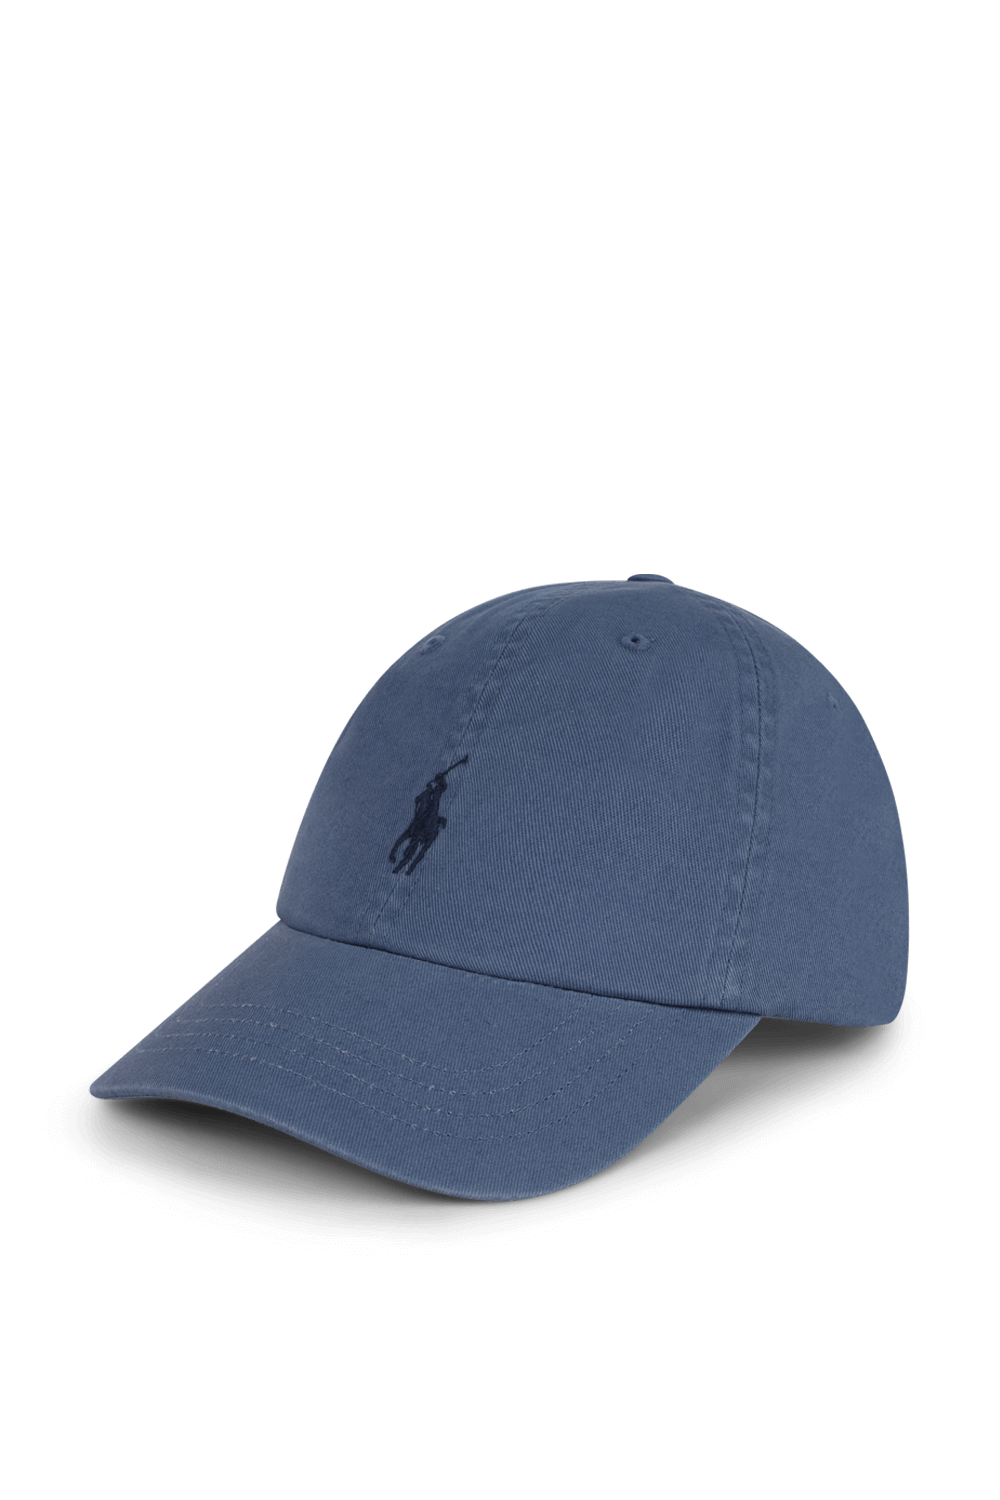 כובע מצחייה עם לוגו רקום POLO RALPH LAUREN